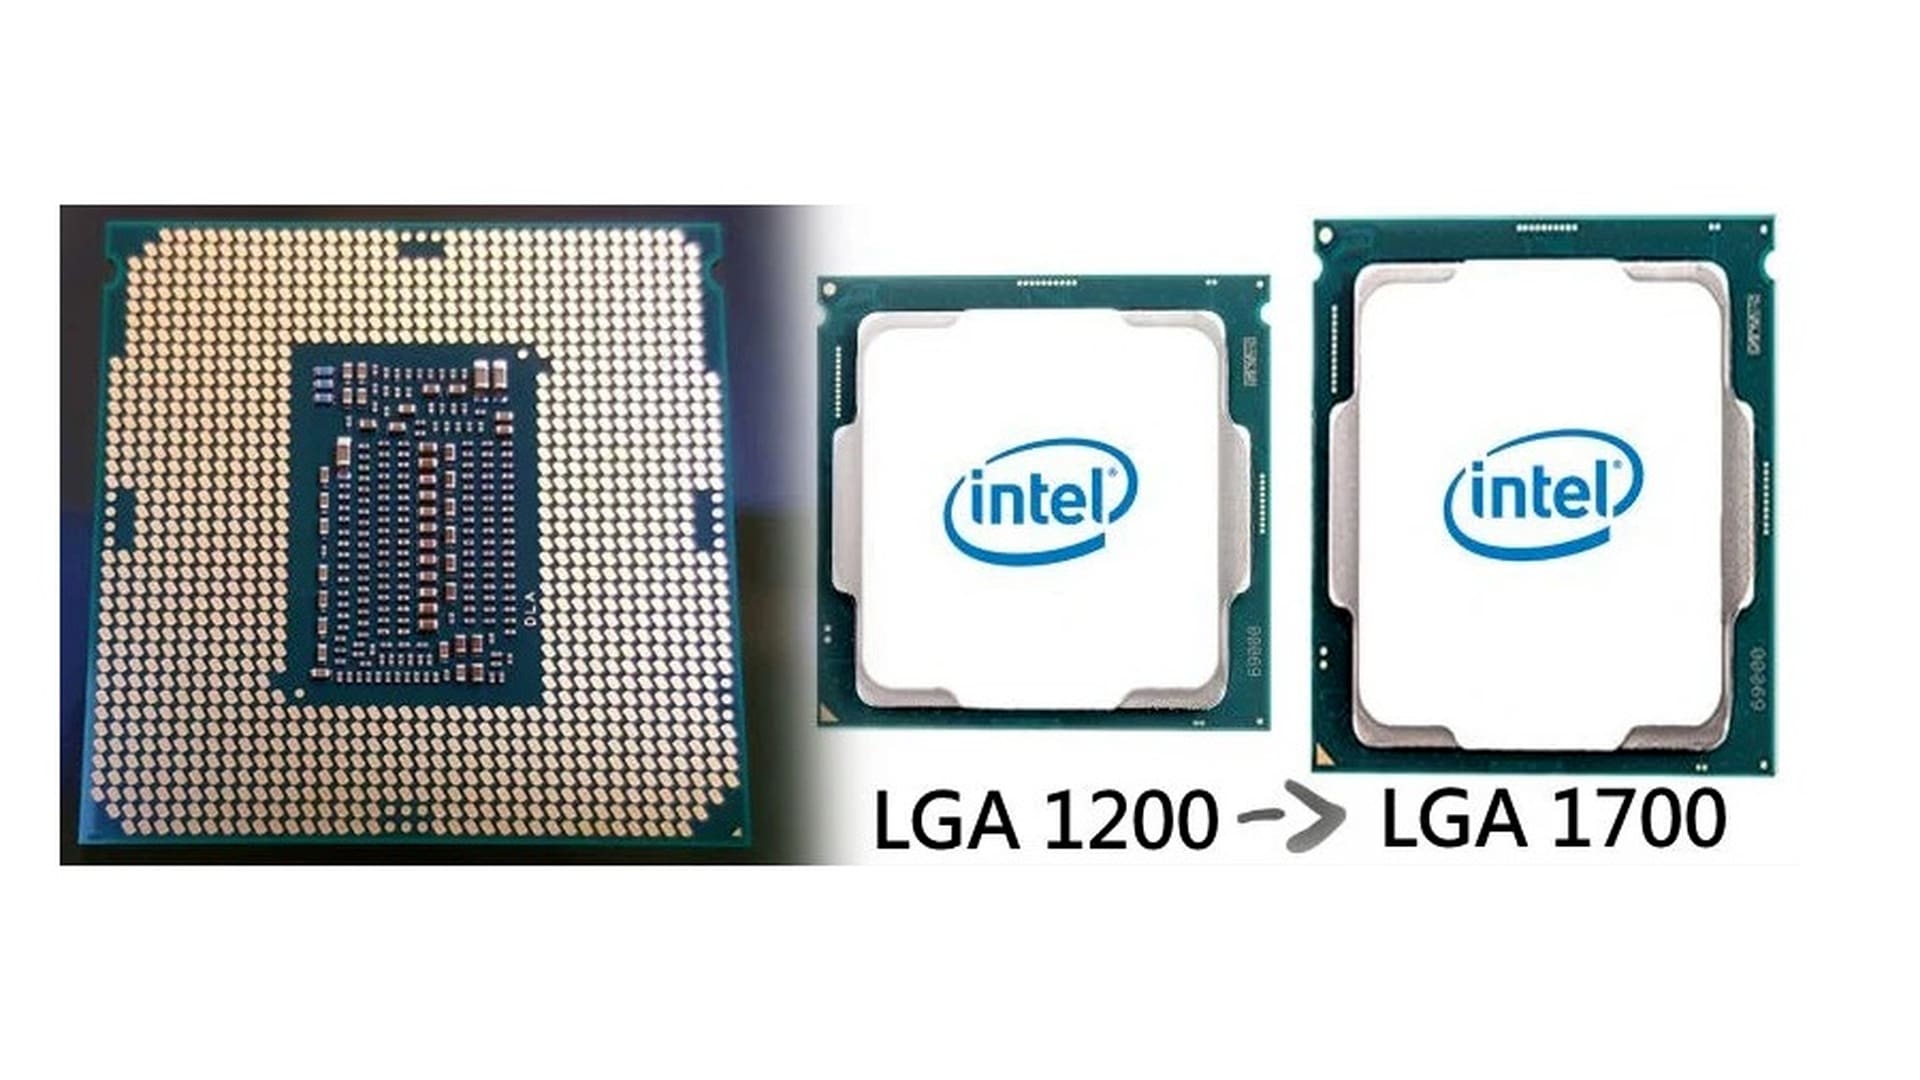 Процессор i7 1700. Сокет Интел 1700. Intel Core Socket 1700. LGA 1700 vs LGA 1200 процессор. Сокет Интел лга 1700.